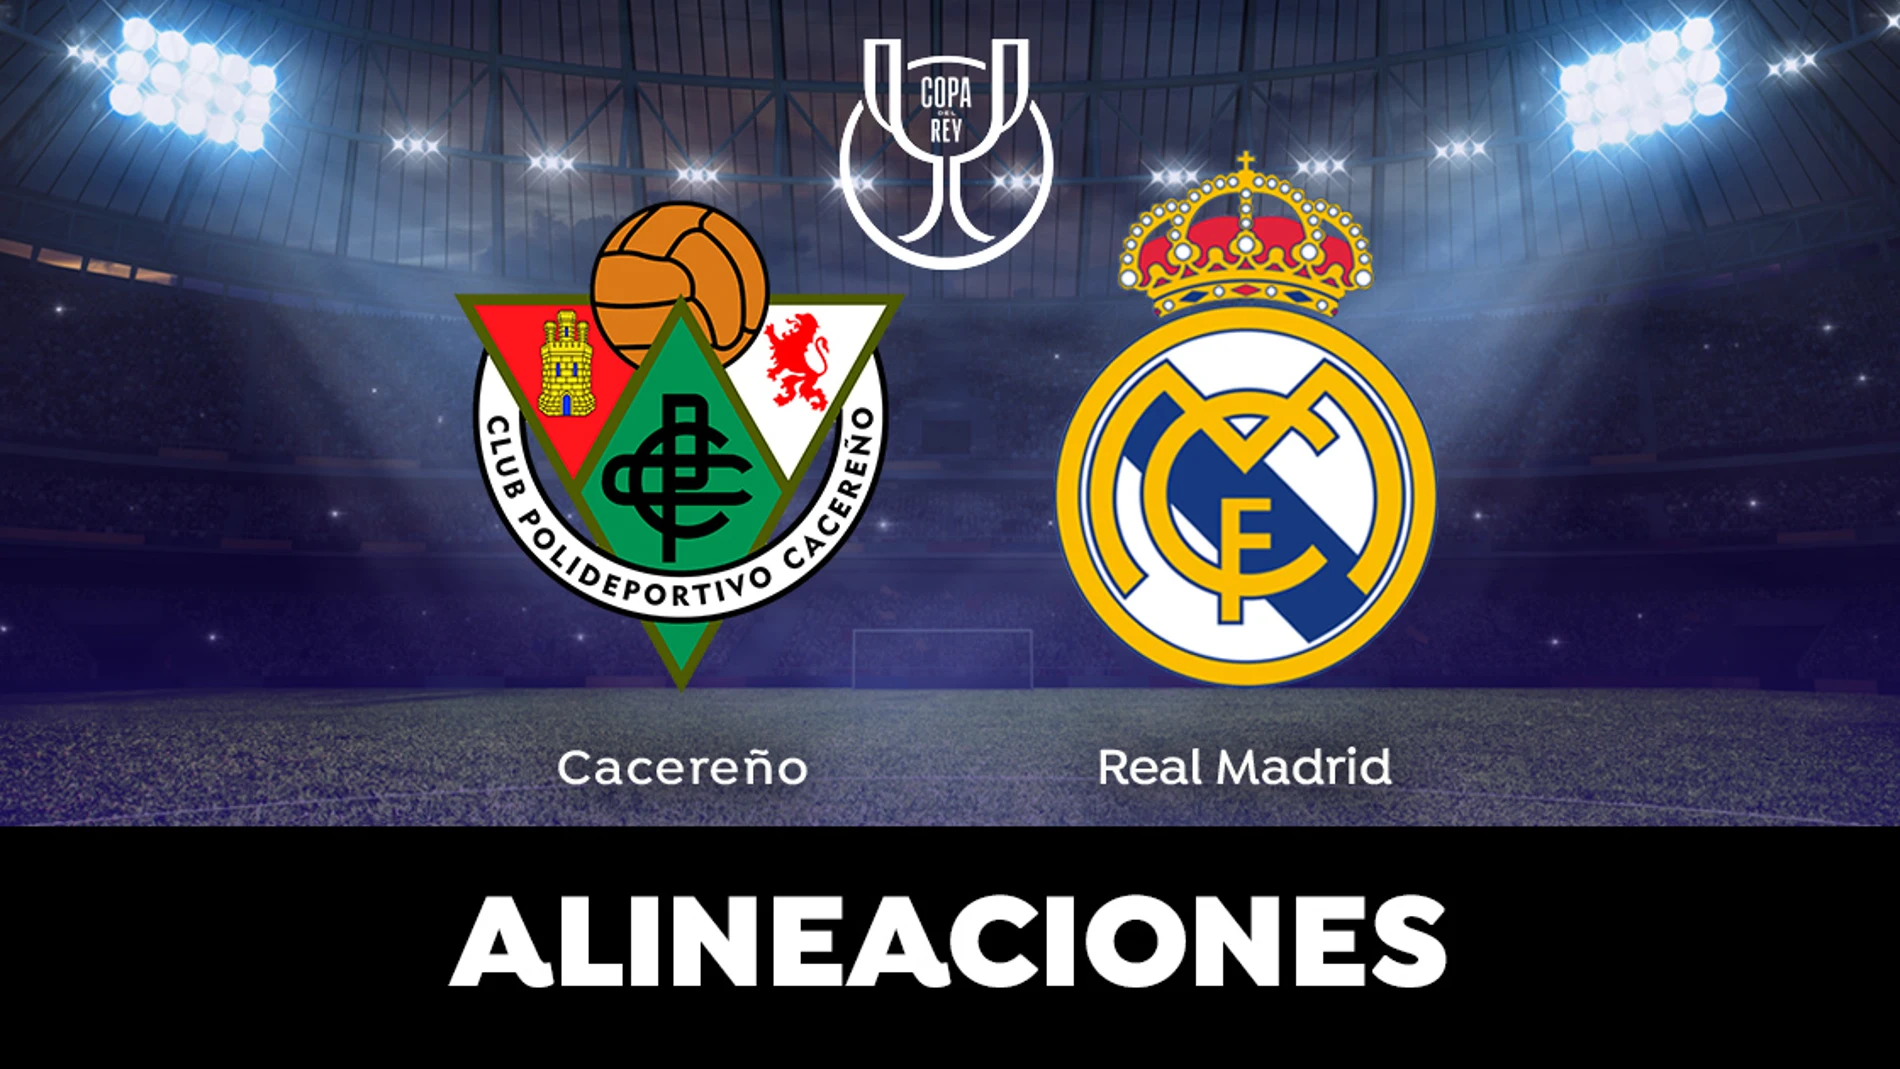 Alineación del Real Madrid hoy ante el Cacereño en el partido de 1/16 de Copa del Rey